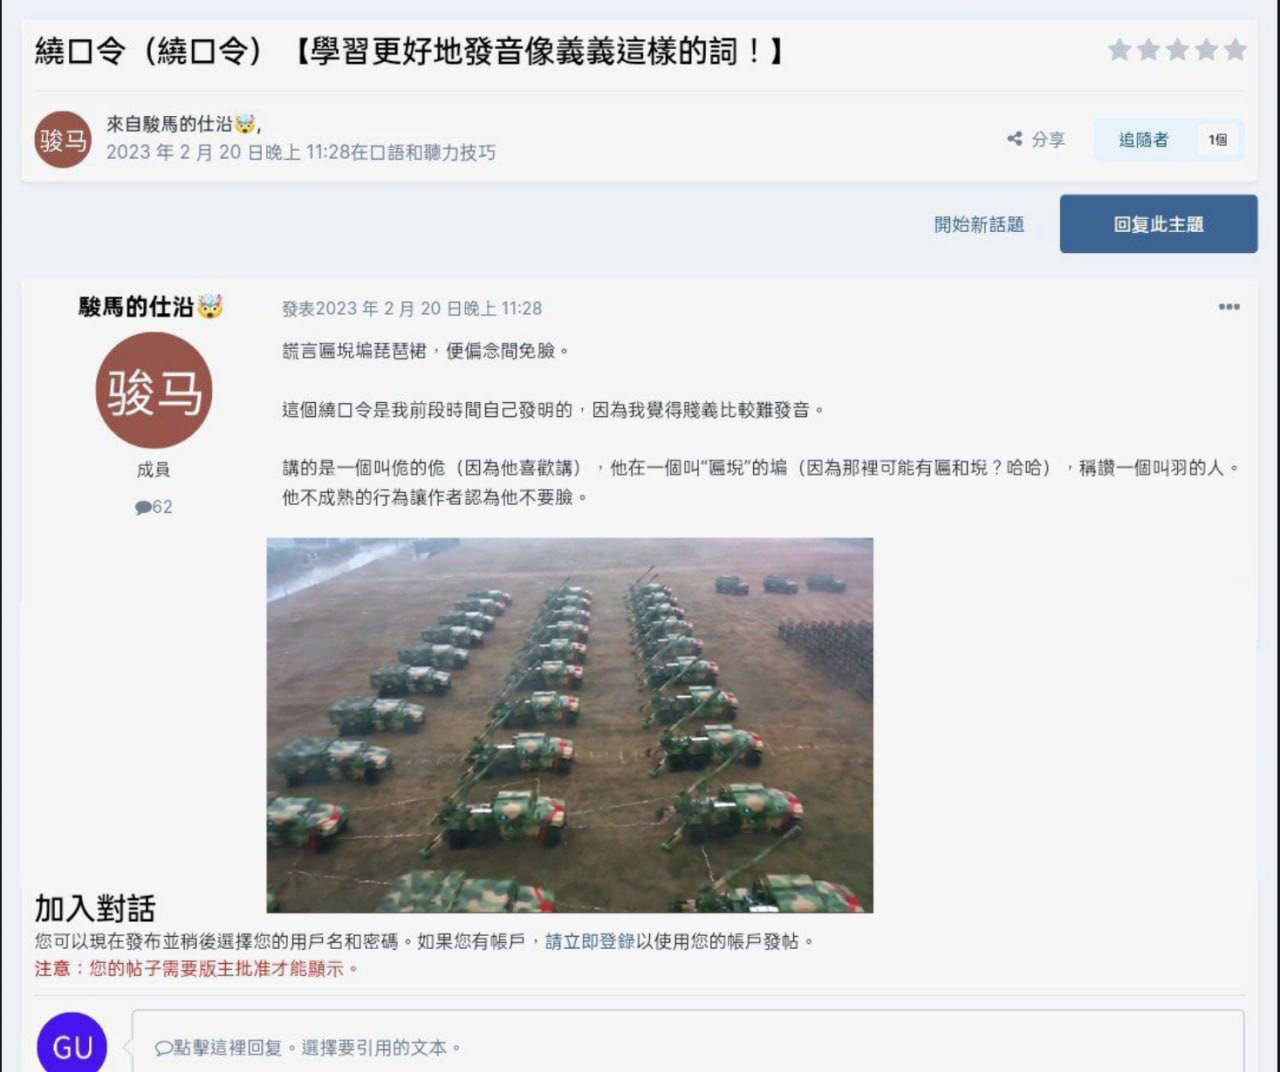 China bersiap untuk memasok amunisi, howitzer ke Rusia – VP News – ‘no talk’